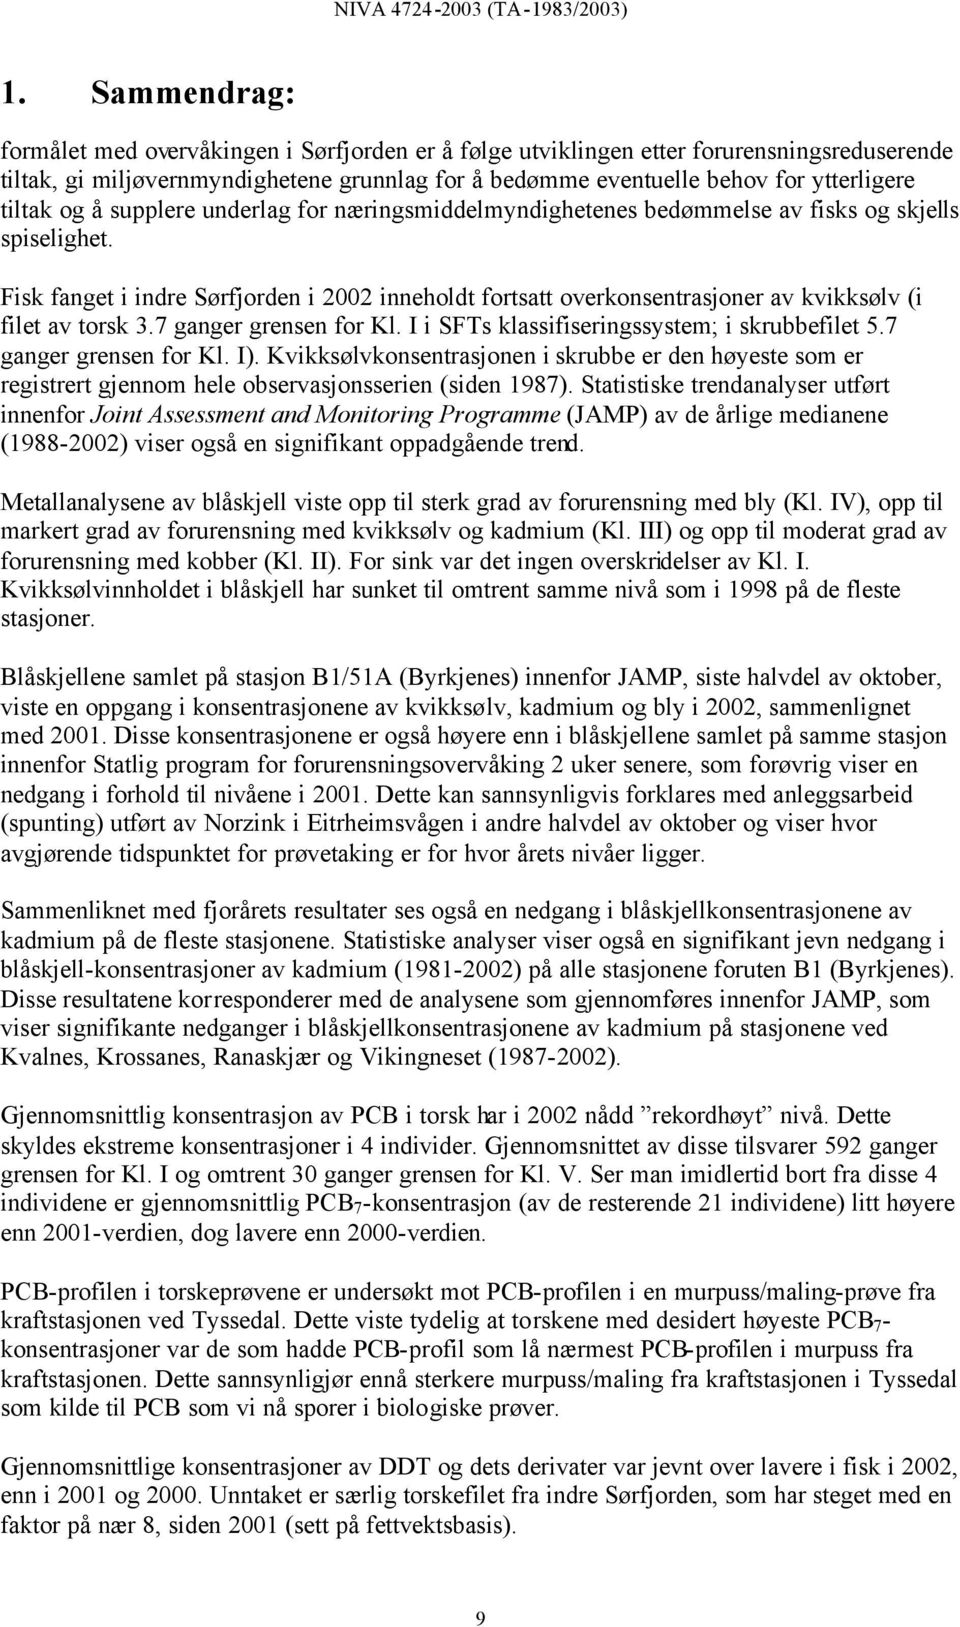 Fisk fanget i indre Sørfjorden i inneholdt fortsatt overkonsentrasjoner av kvikksølv (i filet av torsk 3.7 ganger grensen for Kl. I i SFTs klassifiseringssystem; i skrubbefilet 5.